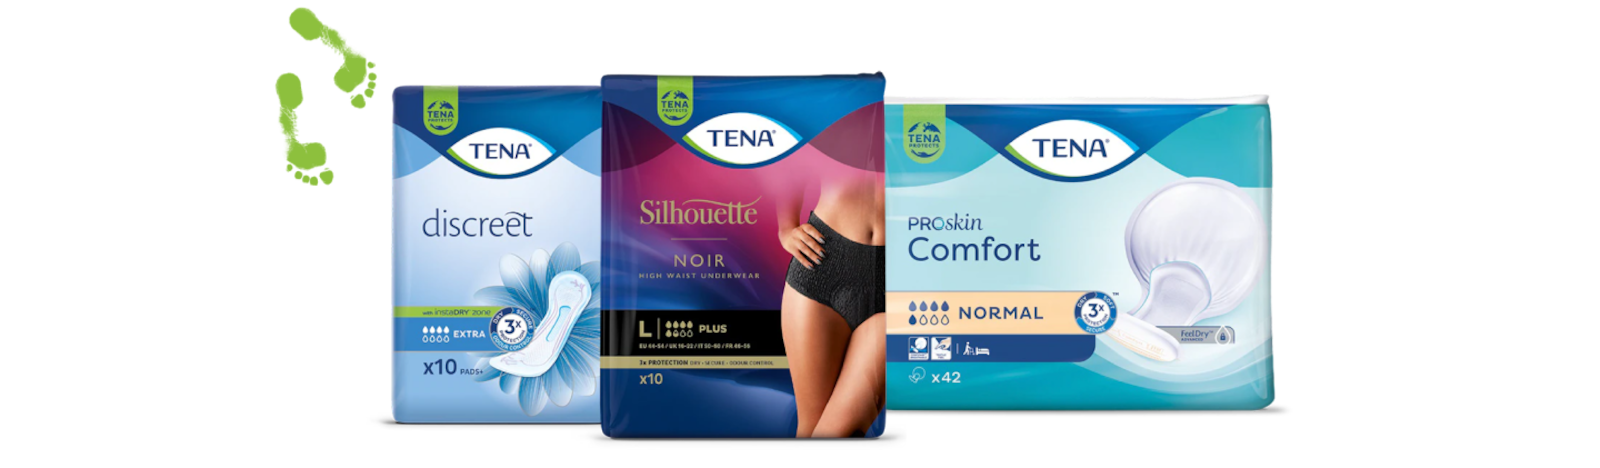 Imagens de embalagens de TENA Silhouette Underwear, TENA Discreet Pad e TENA ProSkin Comfort